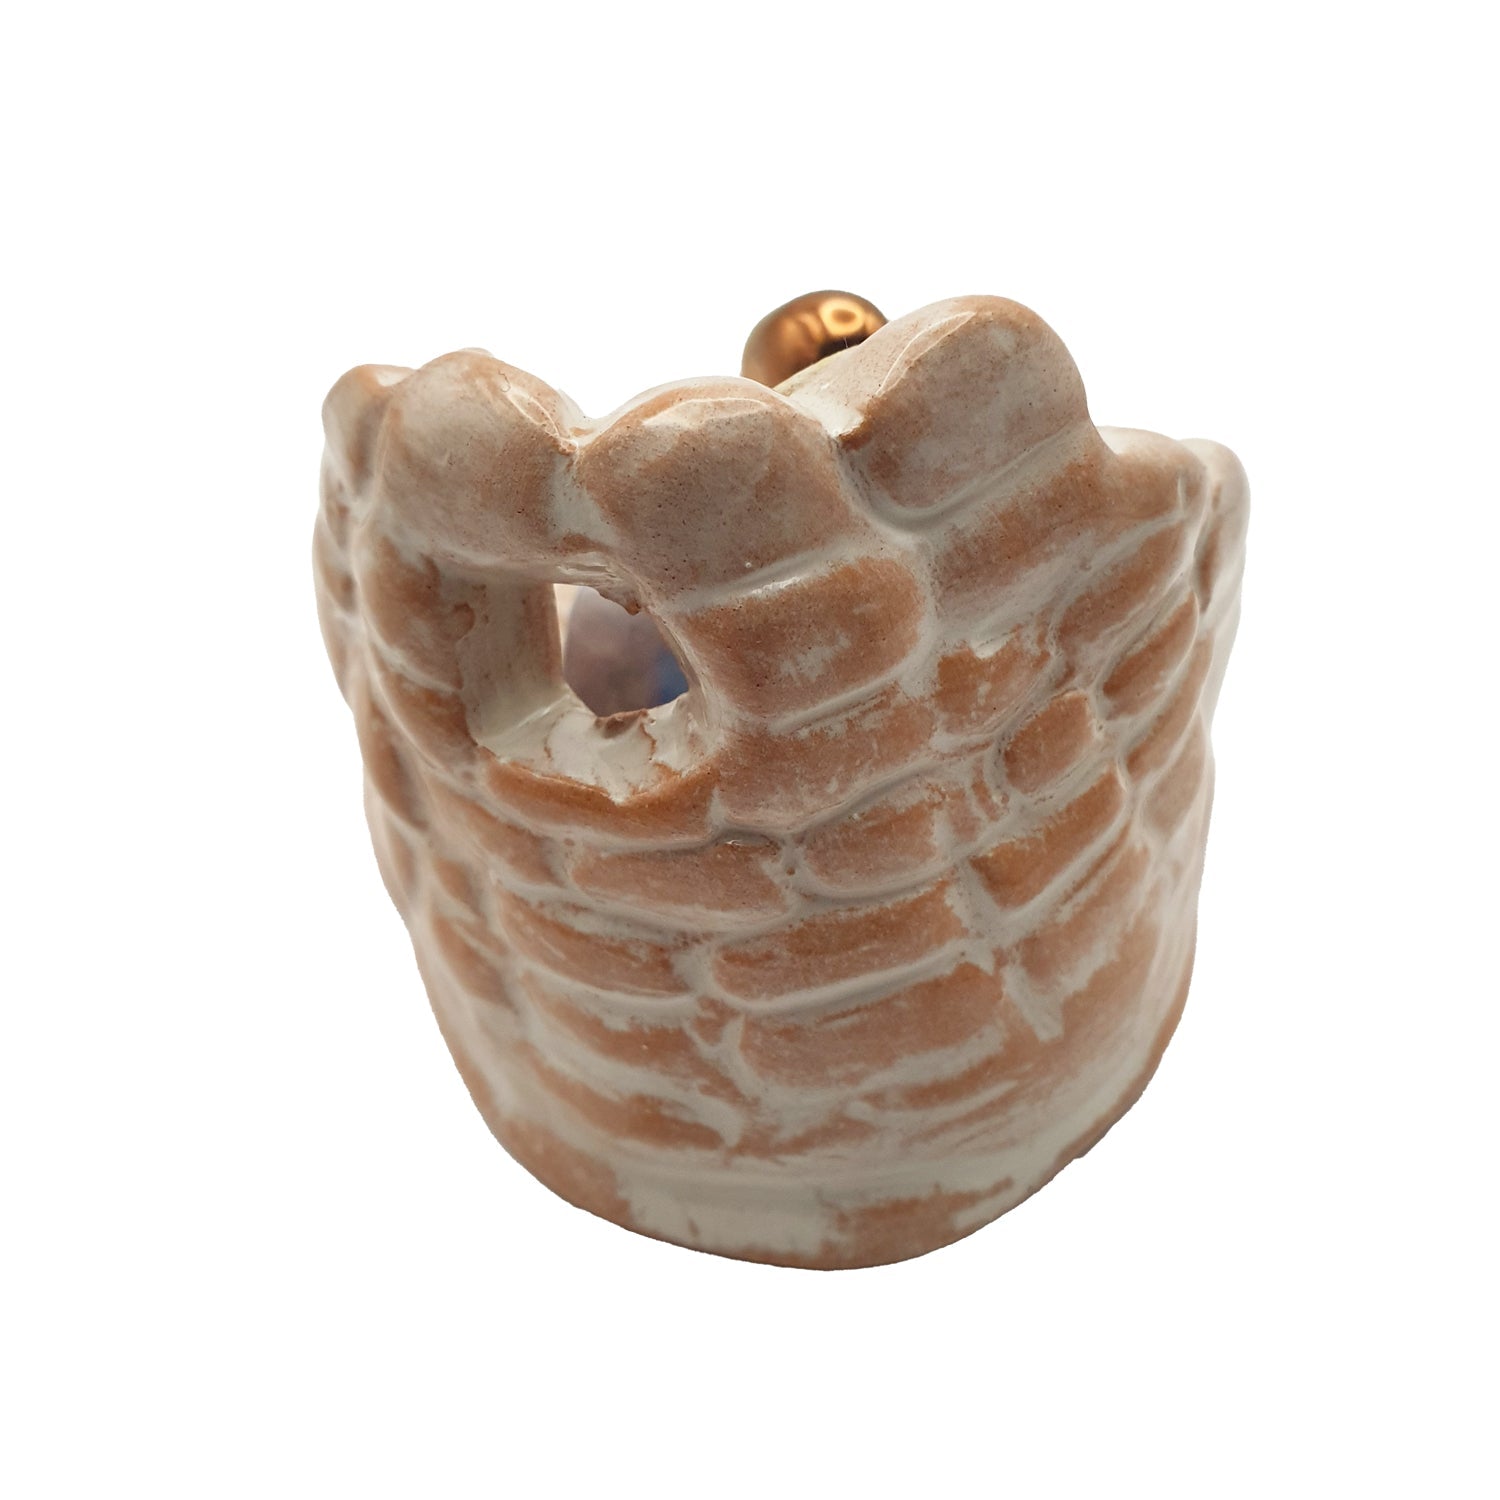 Presepe in ceramica sarda con nuraghe, smalto lucido, cm 6 - Artigianato Pasella